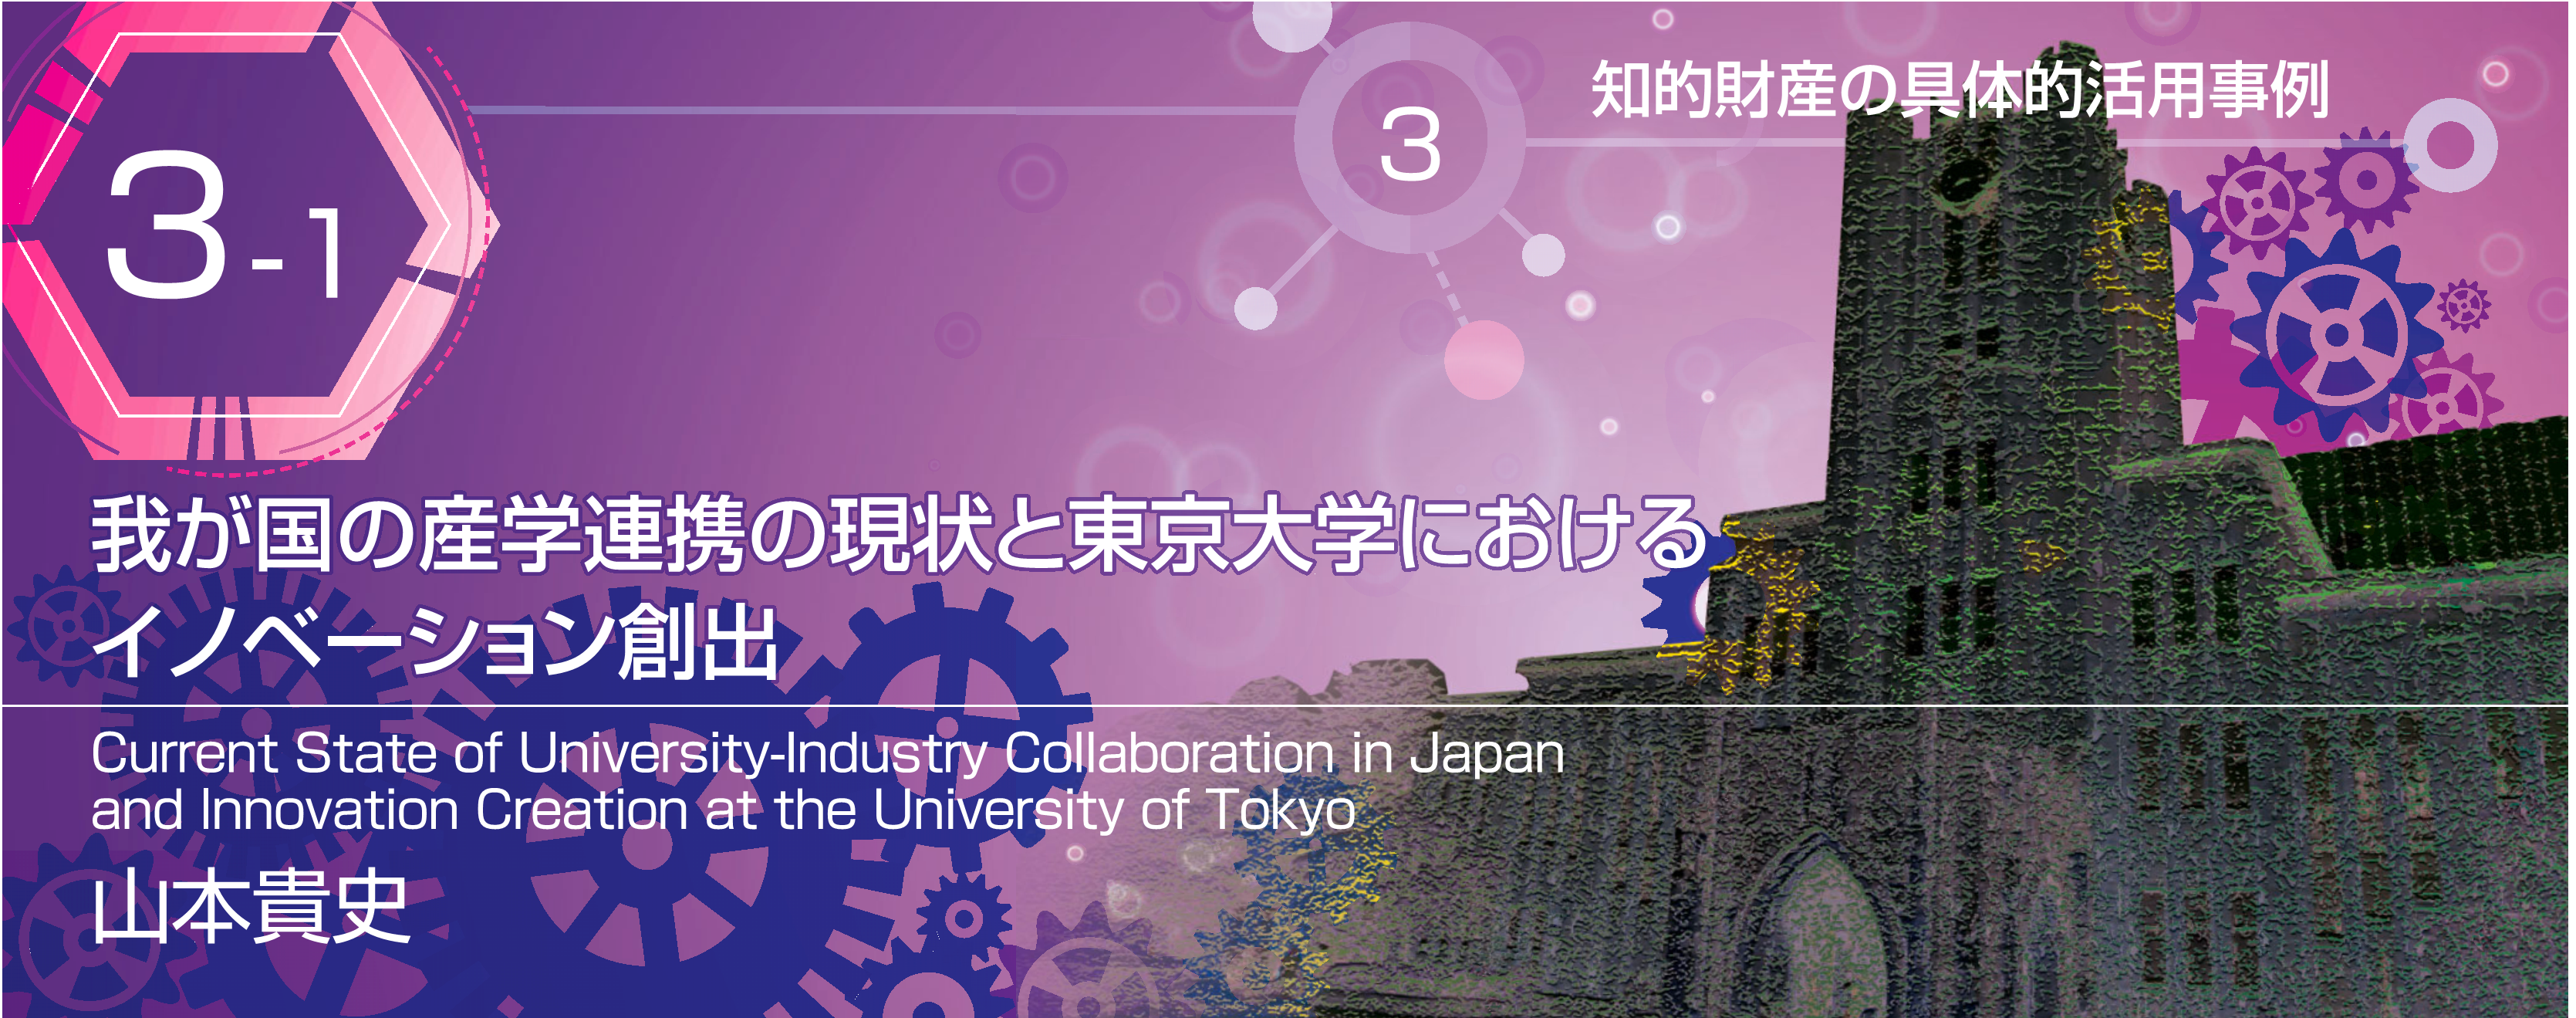 特別小特集 3-1 我が国の産学連携の現状と東京大学におけるイノベーション創出